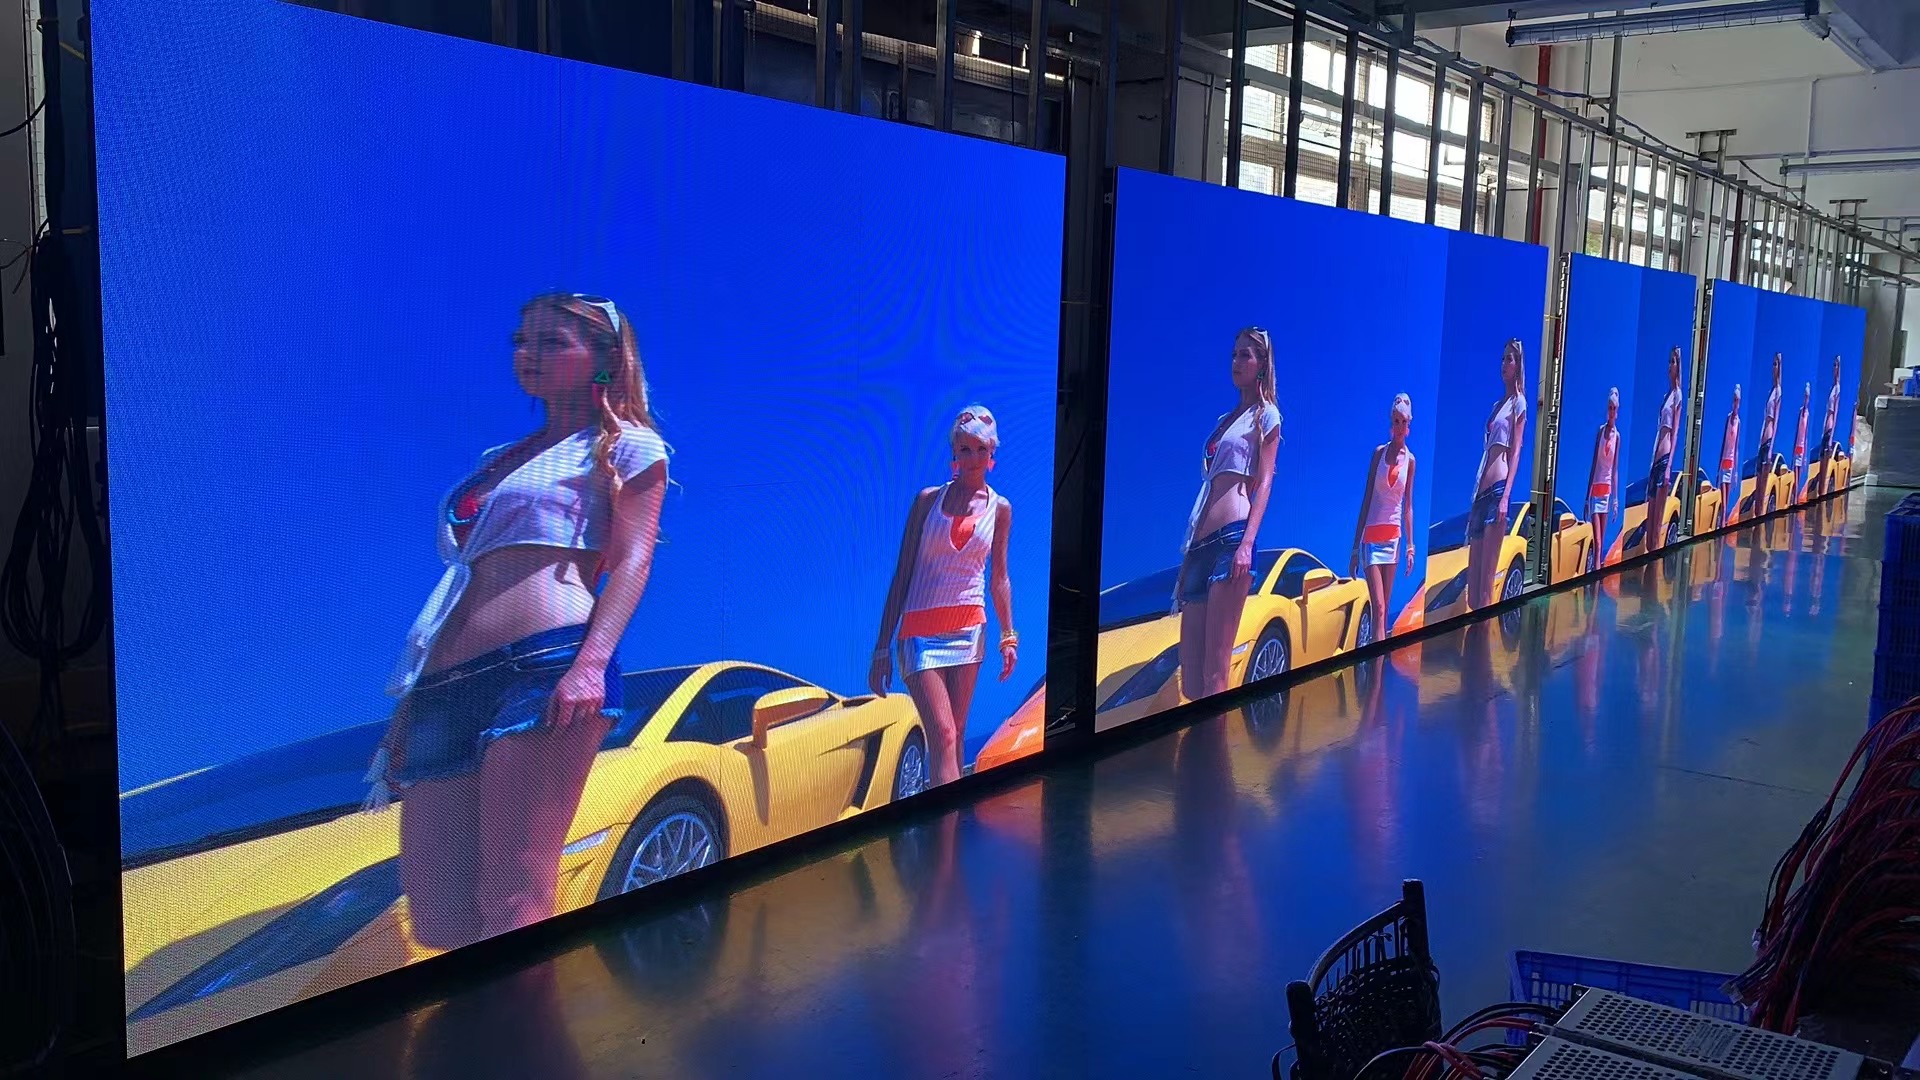 Nuevo cartel Led Digital de alta definición para exteriores que hace publicidad de una pantalla comercial Led gigante grande